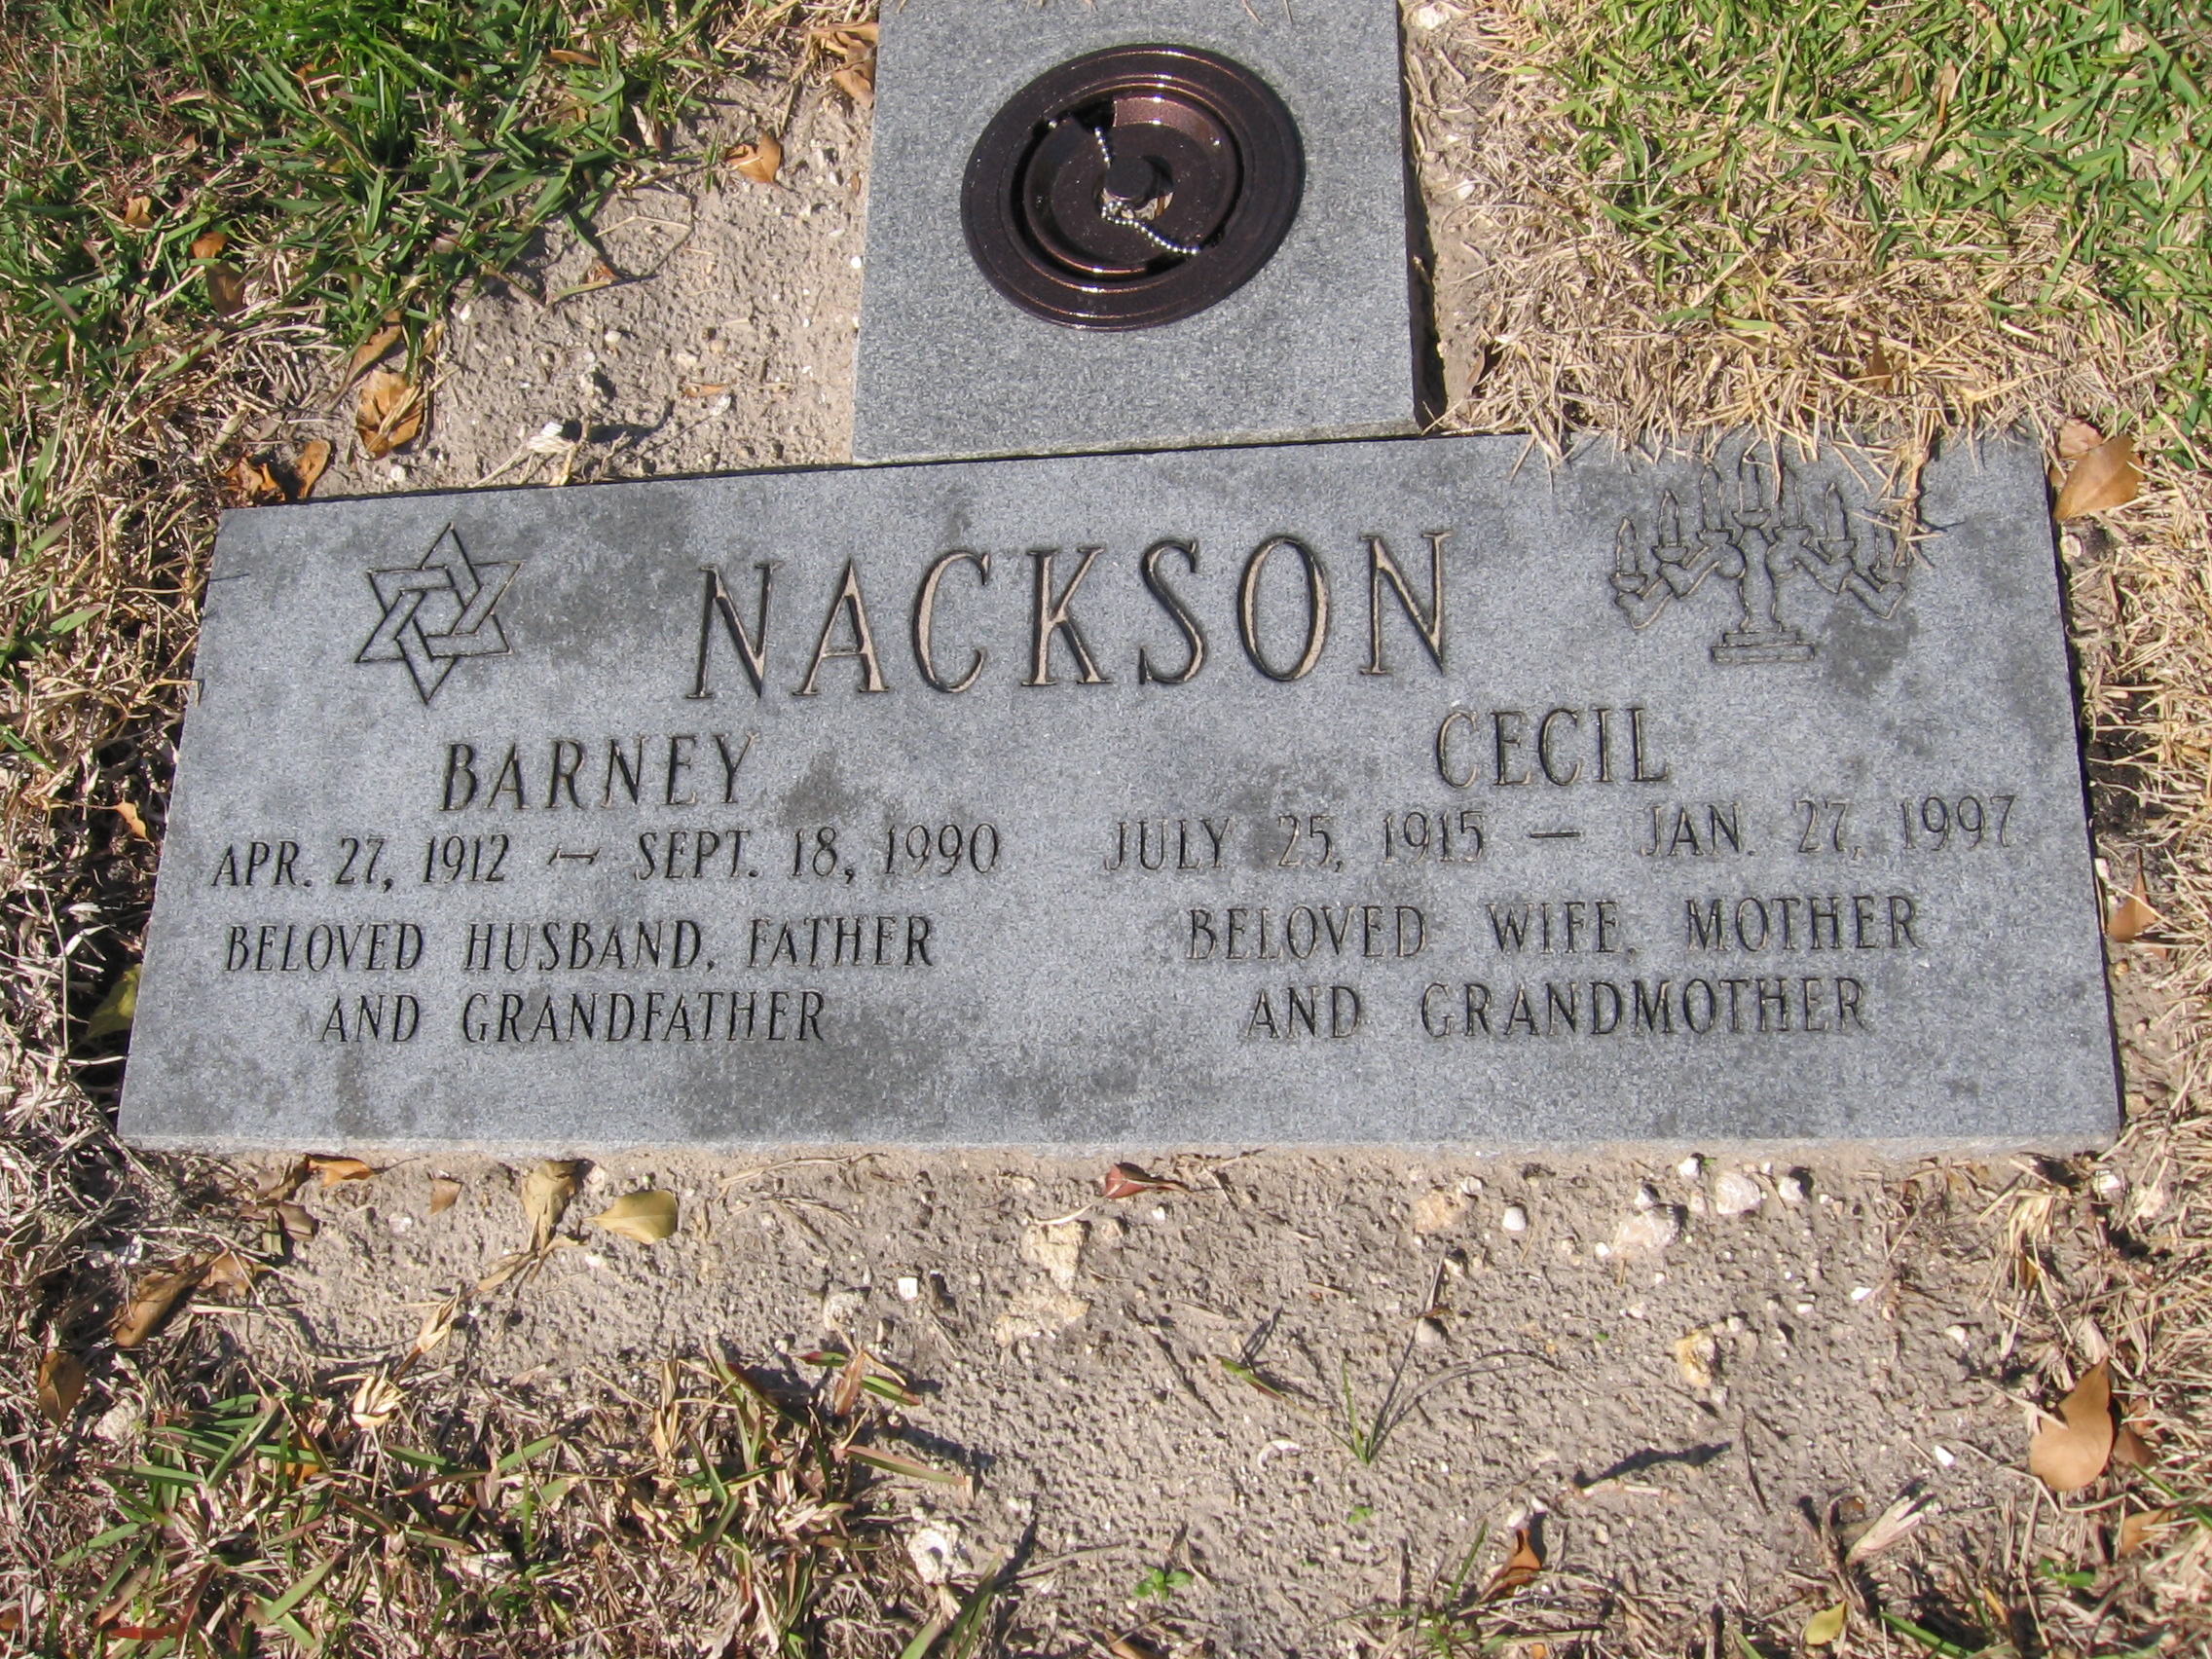 Cecil Nackson